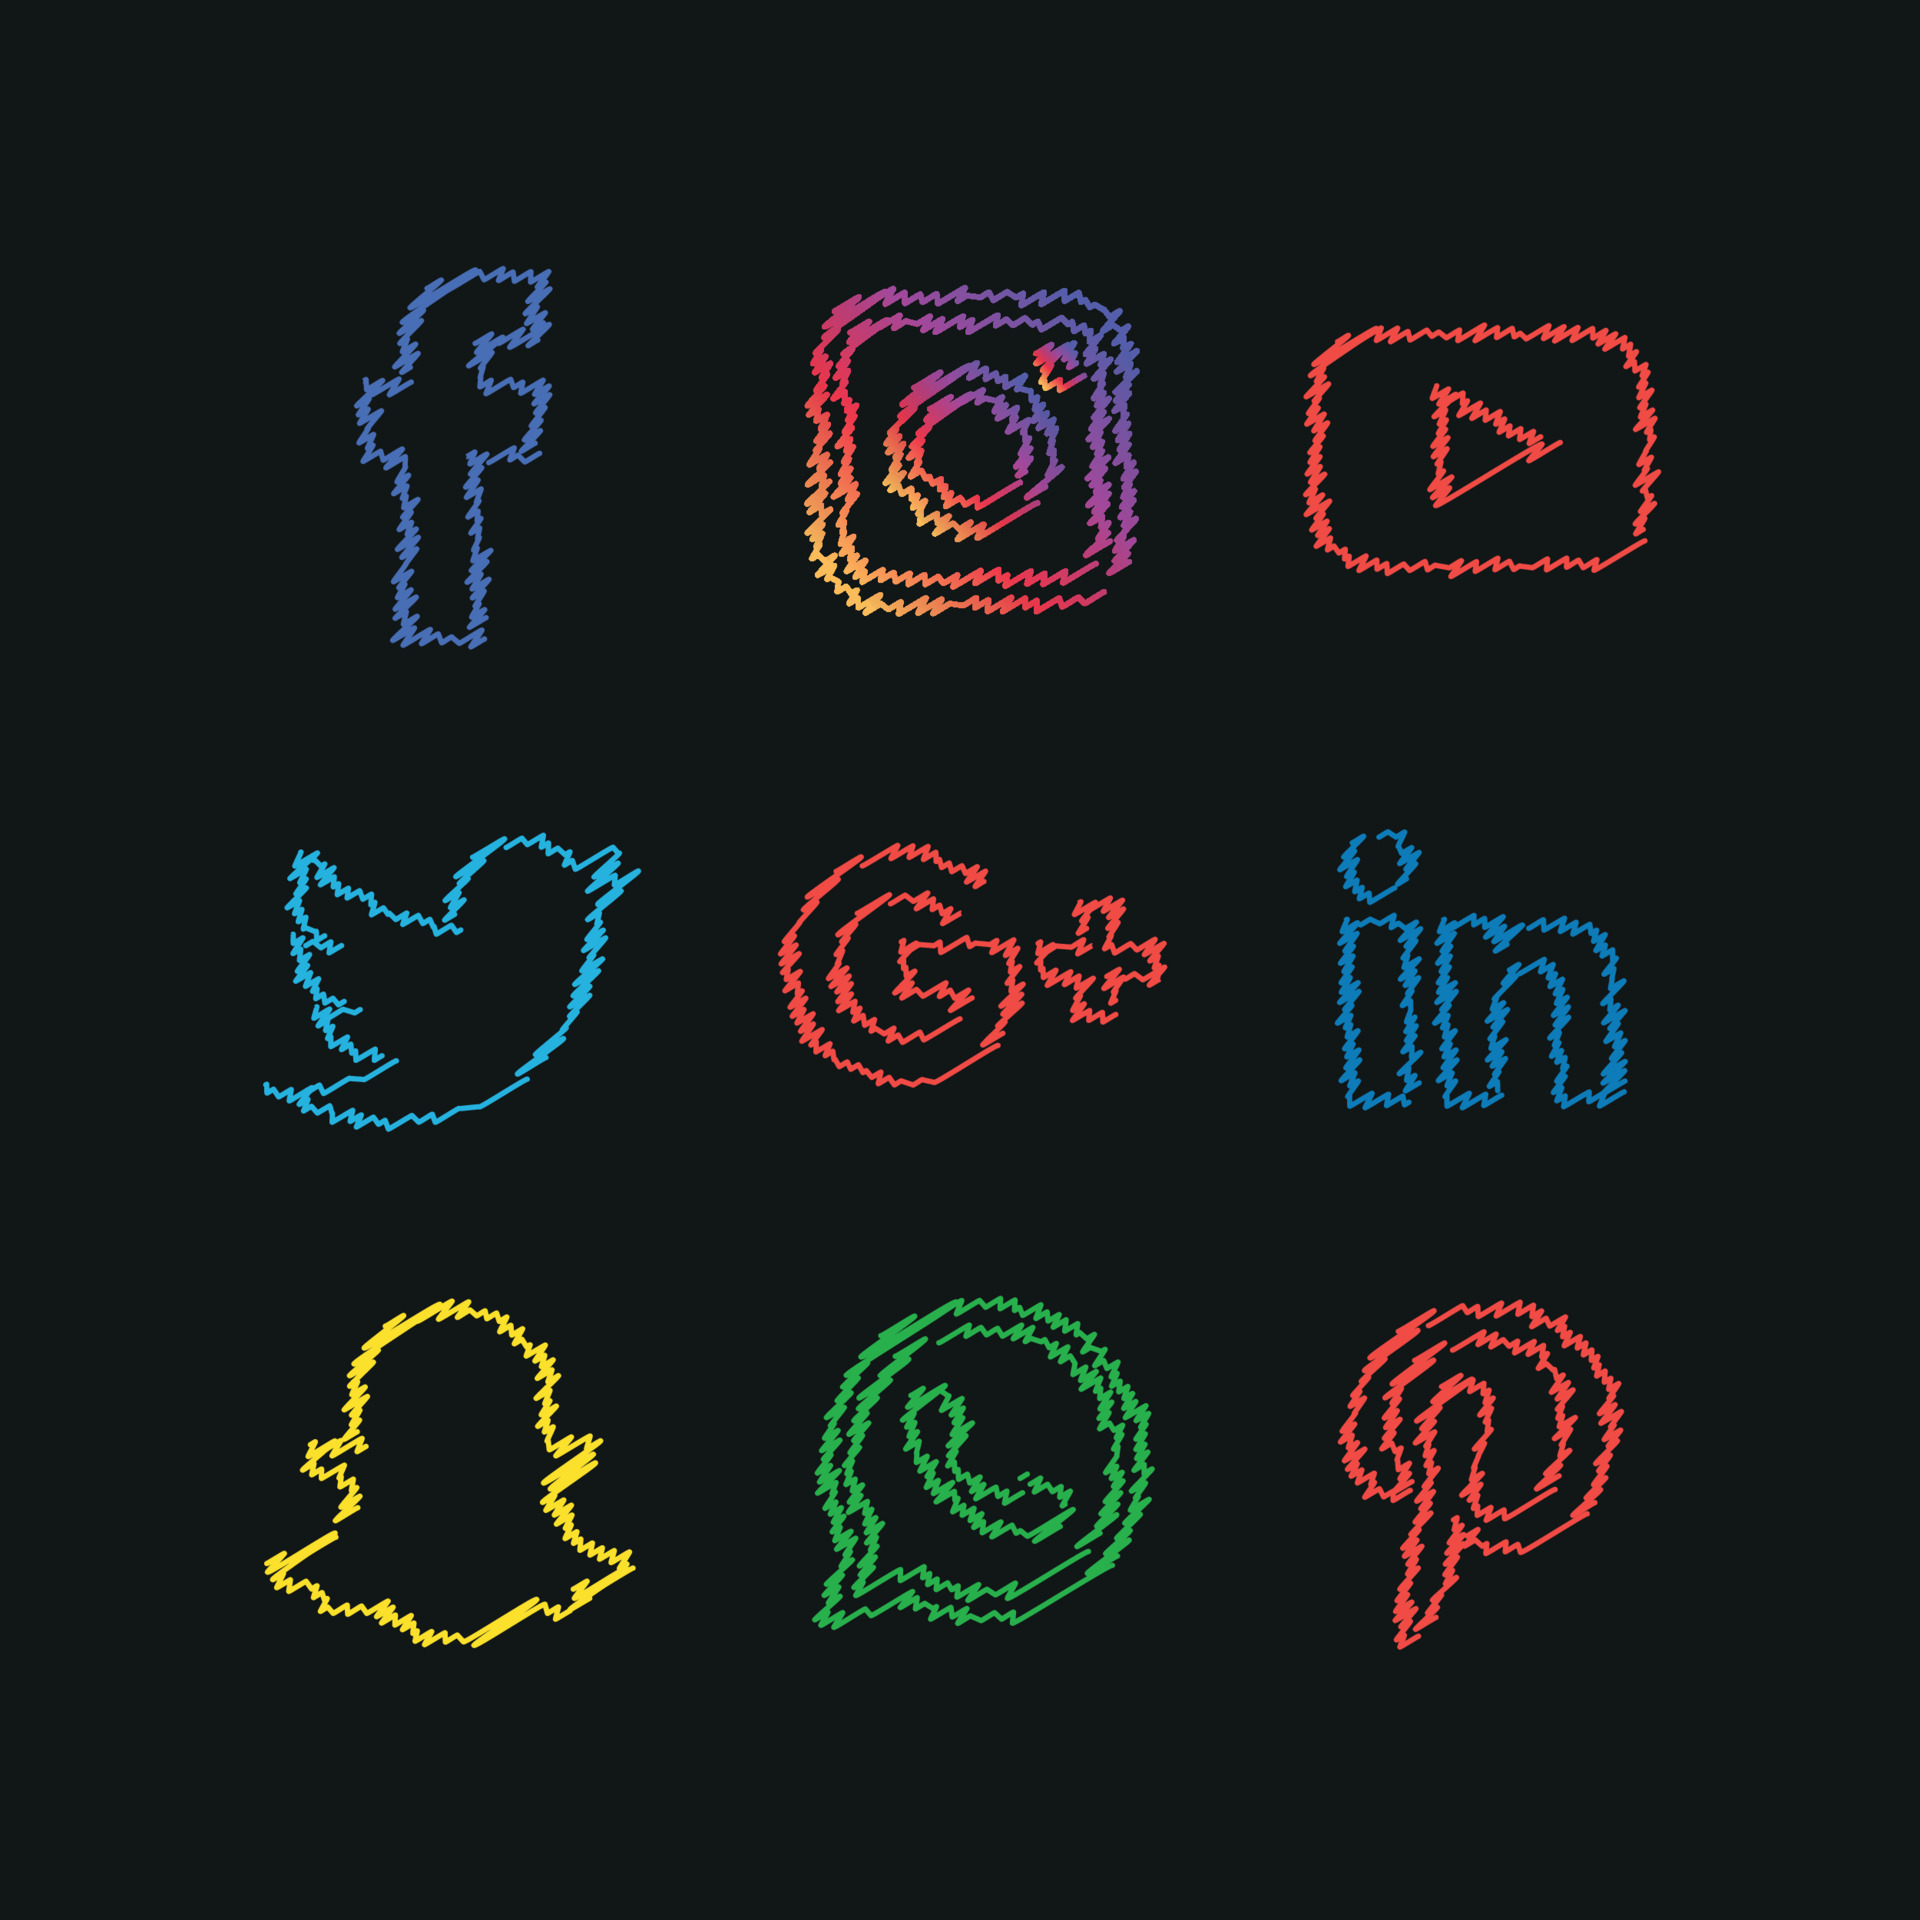 Bạn muốn tạo phong cách riêng biệt cho trang Facebook của mình? Hãy sử dụng những biểu tượng mạng xã hội phẳng công nghệ trên nền đen để tạo nên một trang cá nhân độc đáo và thu hút sự chú ý của bạn bè nhé!